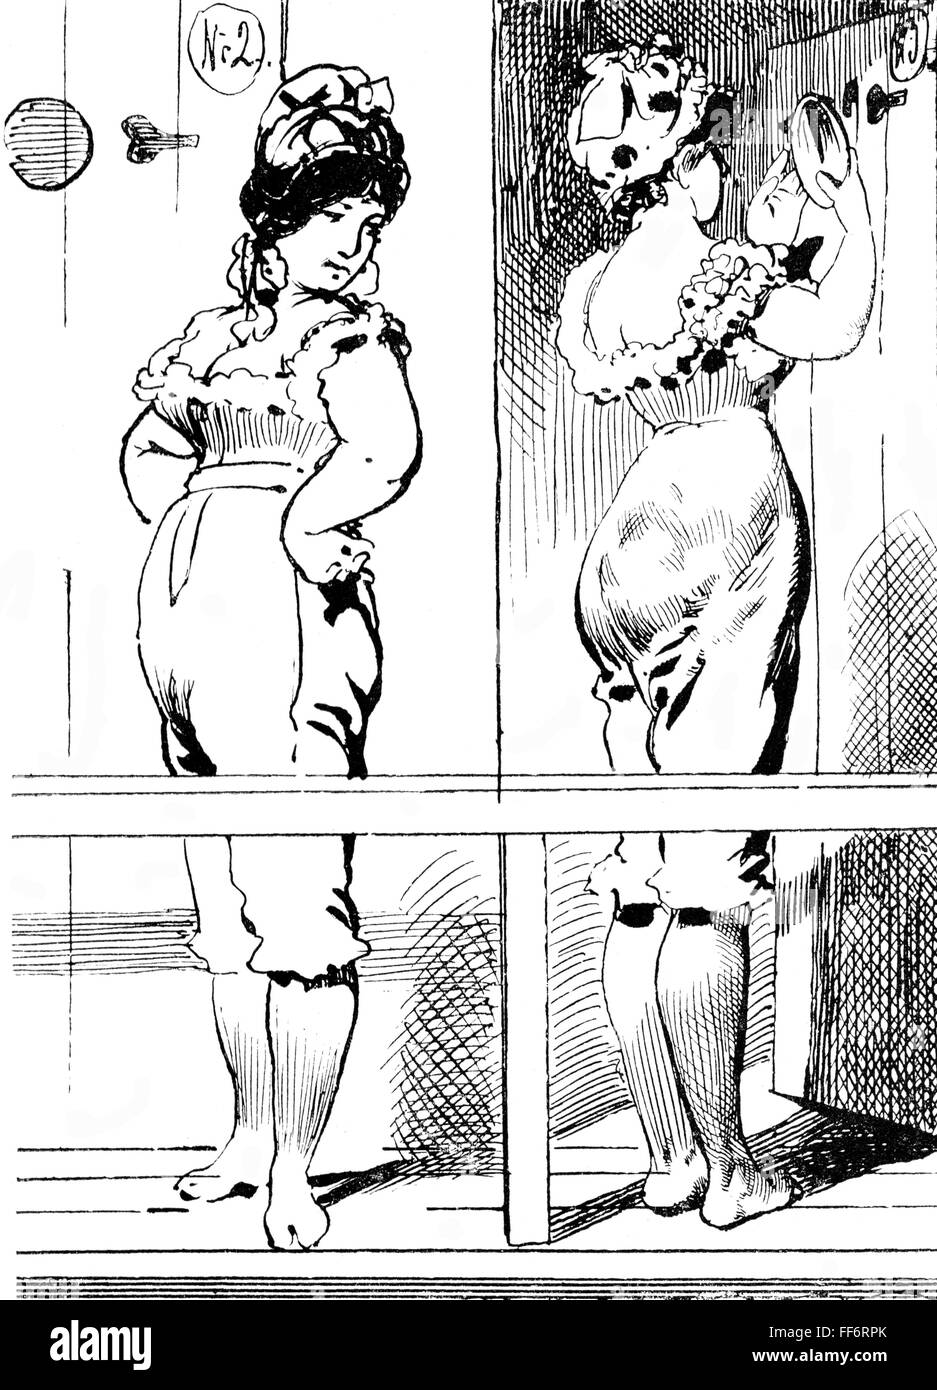 Bain, mode plage, 'mais vous êtes très vain, Fanny!', dessin par Karel KLIC (1841 - 1926), vers 1900, droits supplémentaires-Clearences-non disponible Banque D'Images